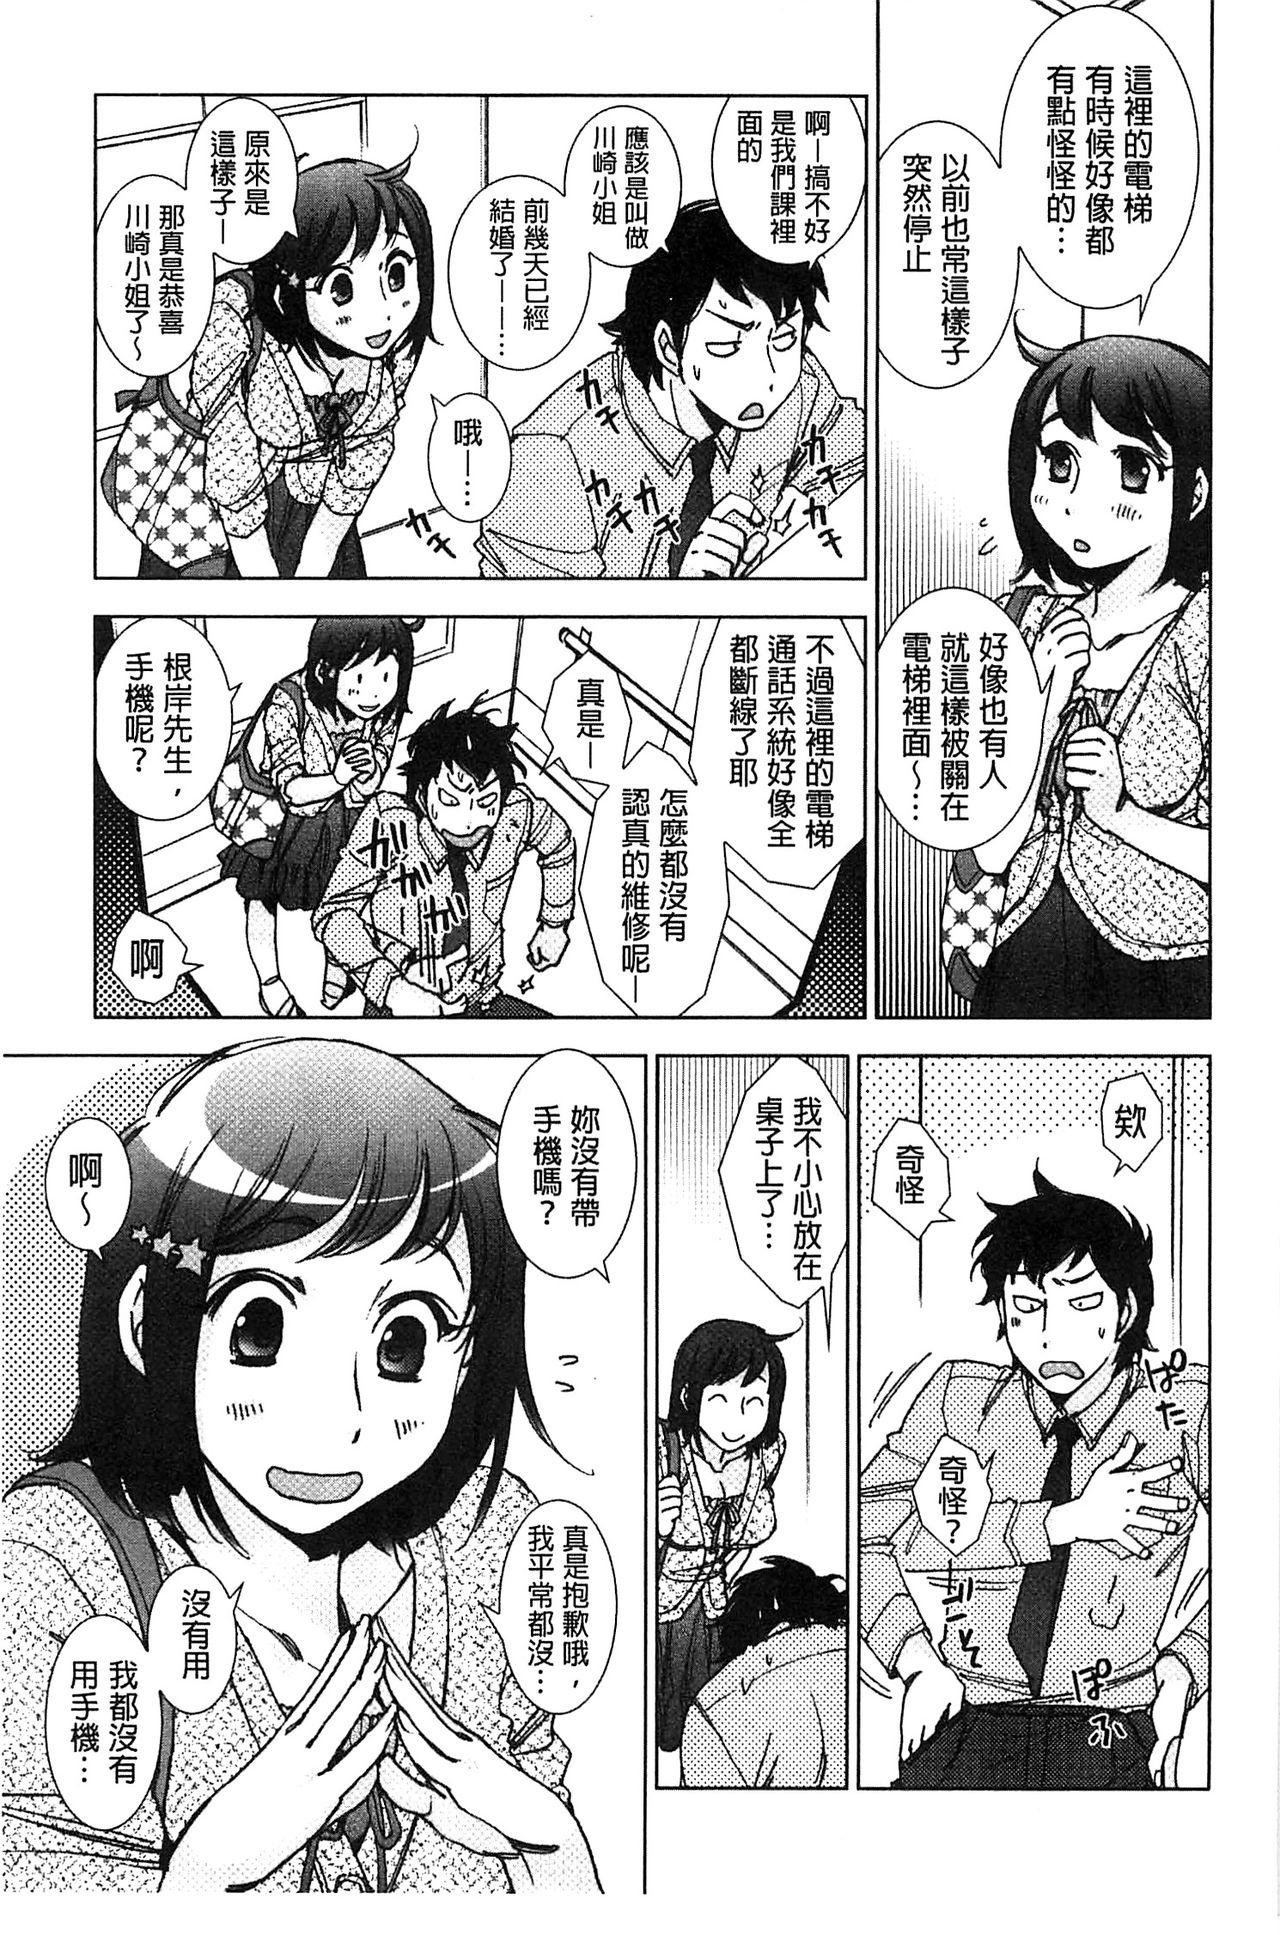 Cameltoe Shiawasesou no Yasashii Koibito | 幸福莊裡溫柔的戀人 Hardcorend - Page 10